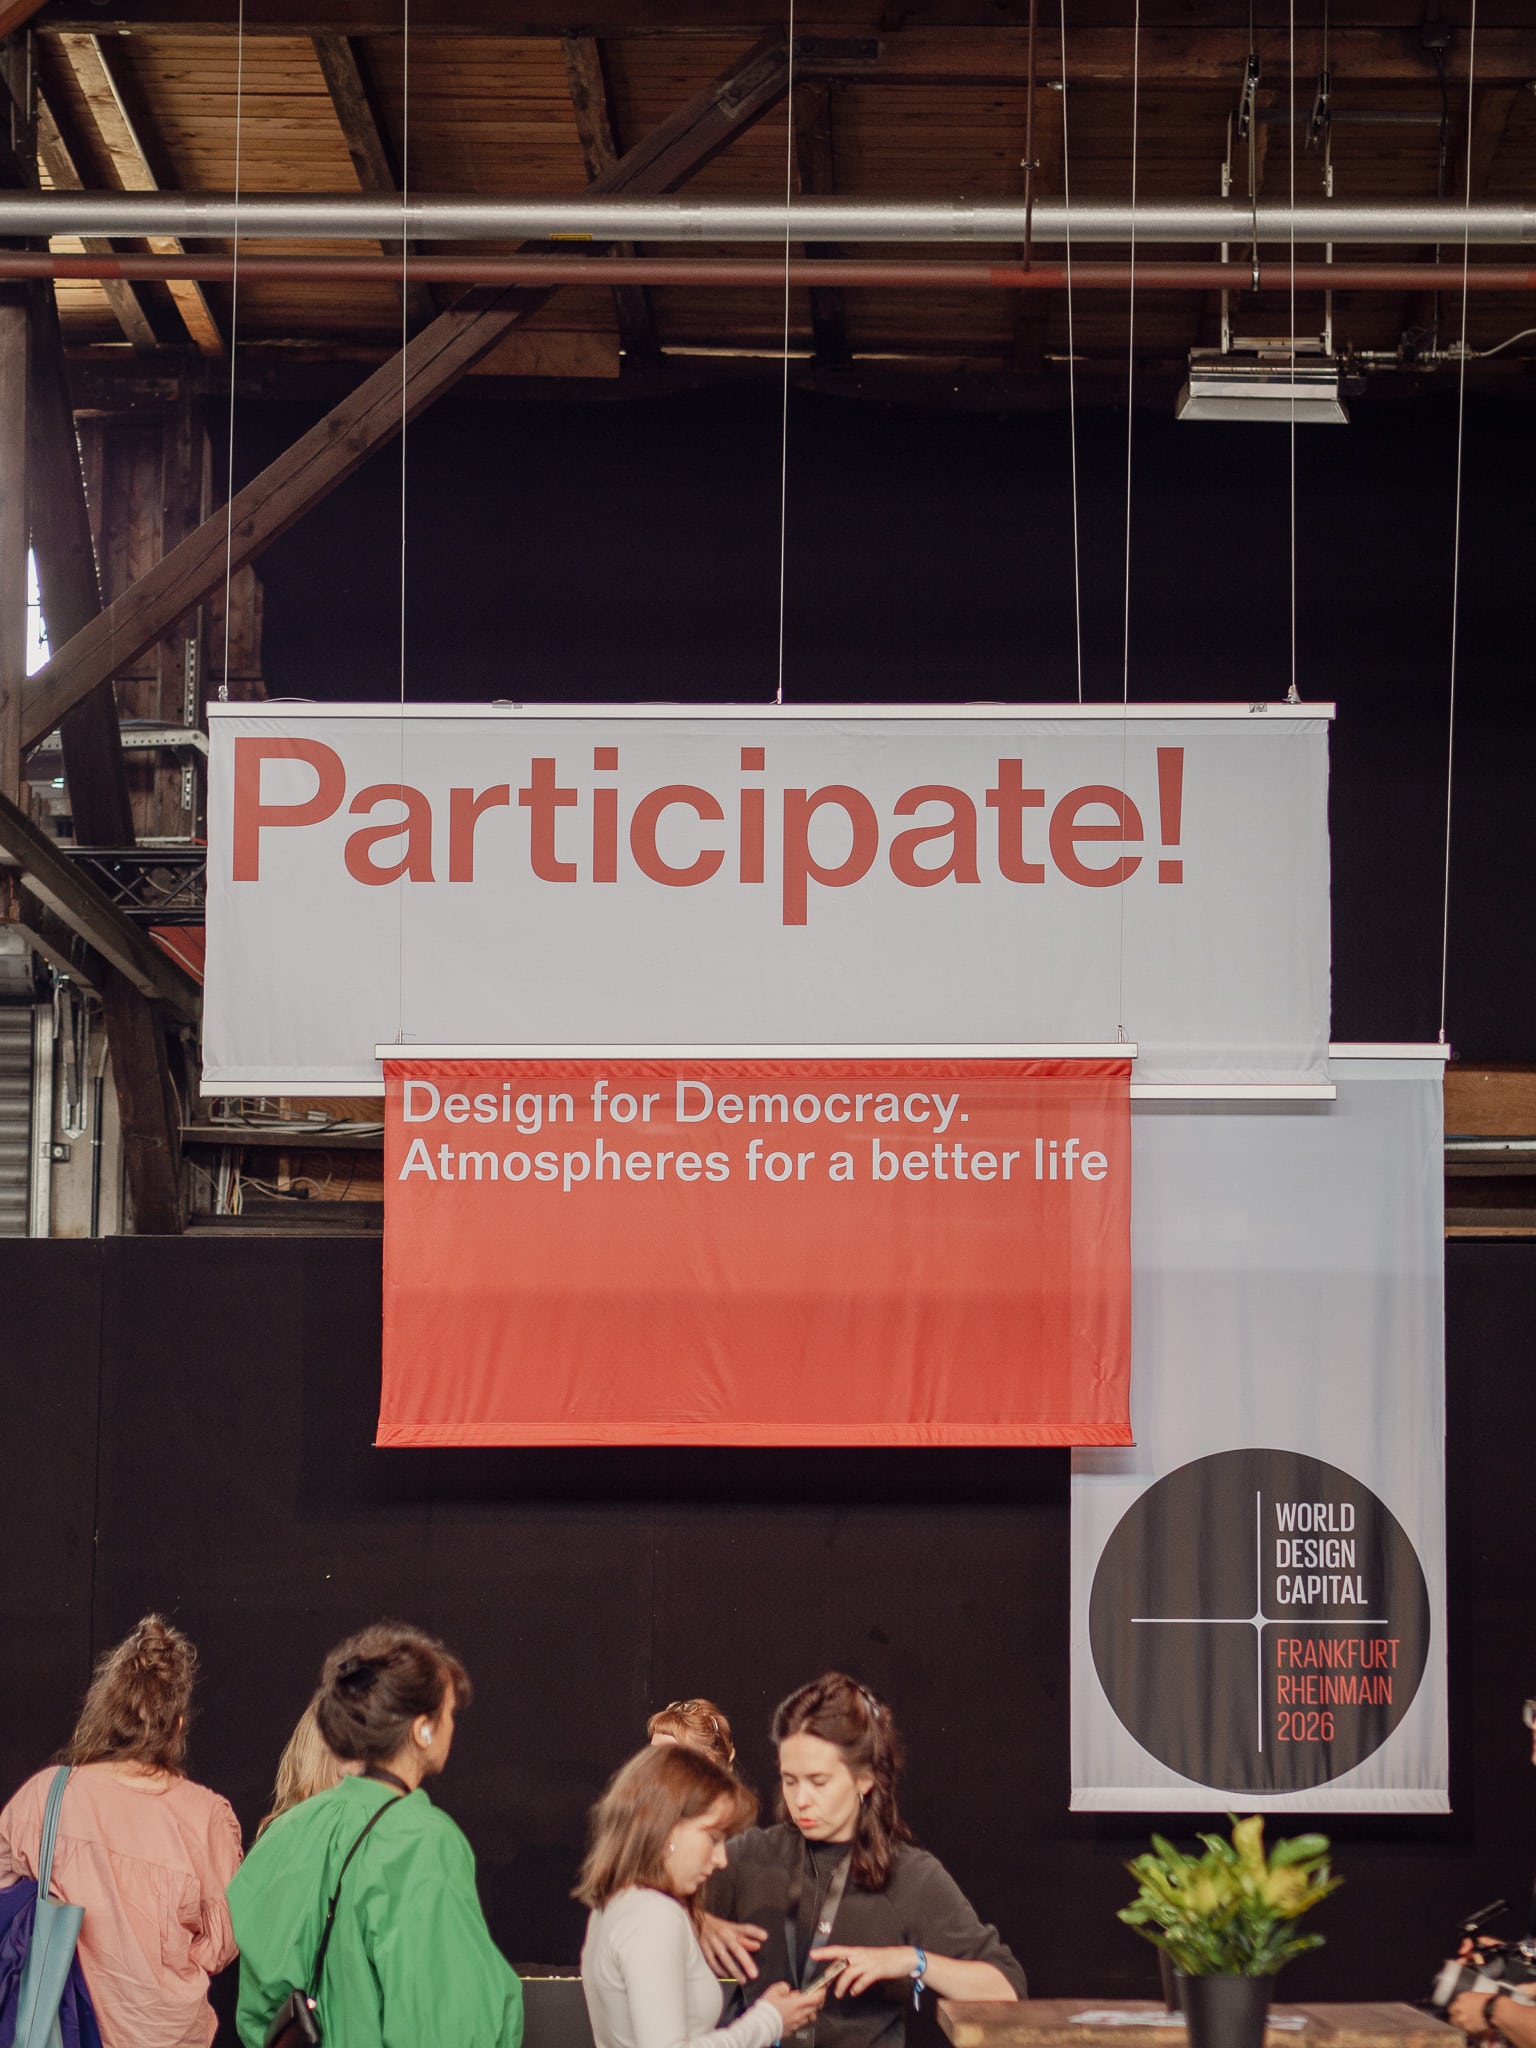 Menschen versammeln sich unter großen Bannern mit der Aufschrift "Participate! Design for Democracy. Atmospheres for a better life" in einer Veranstaltungshalle.